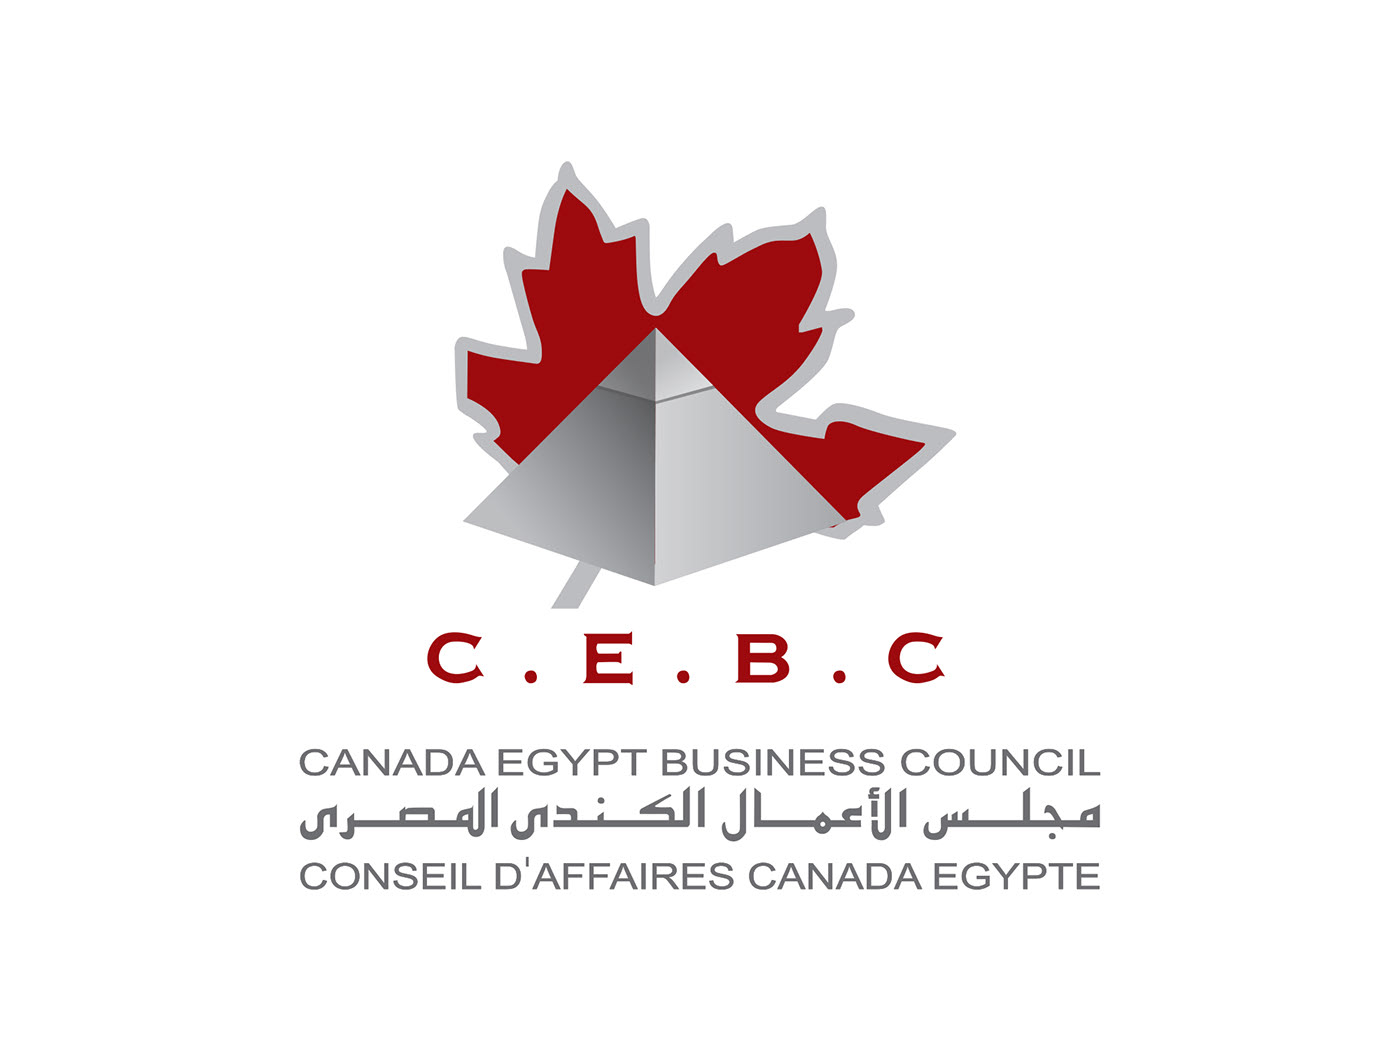 Canada Egypt Business Council Website Design & Wordpress Development